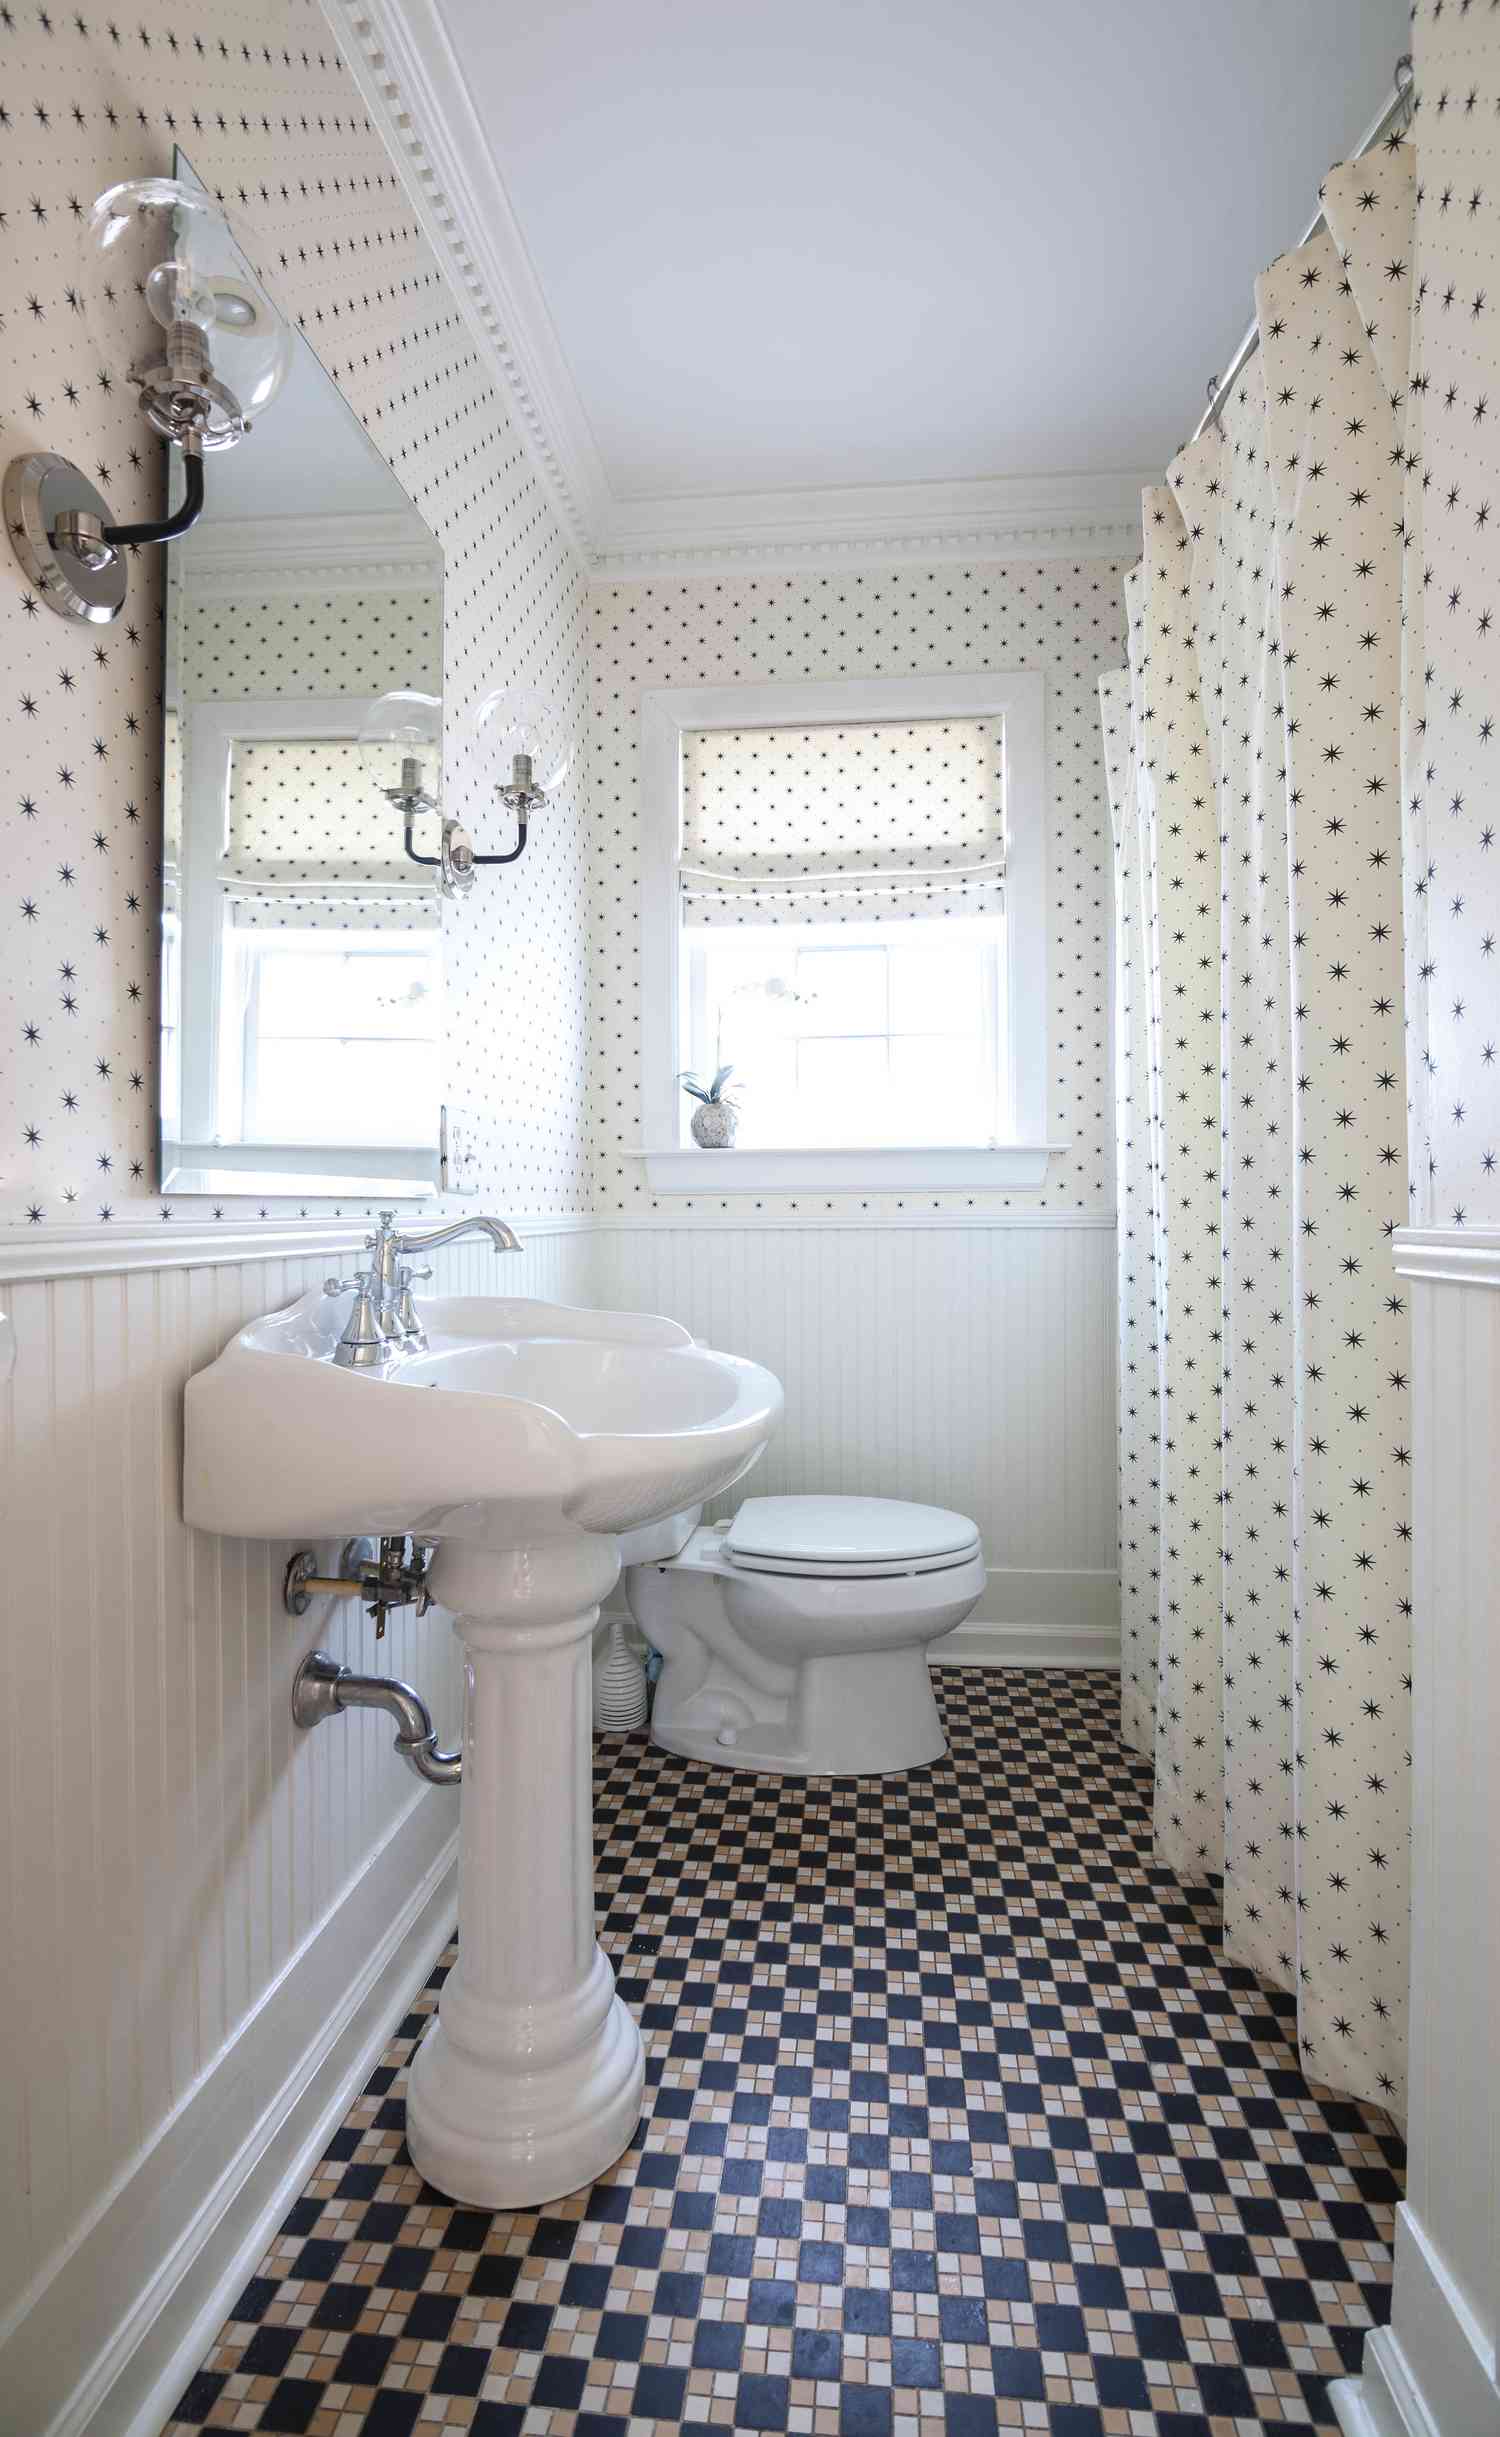 Une salle de bain avec murs à pois et rideau de douche